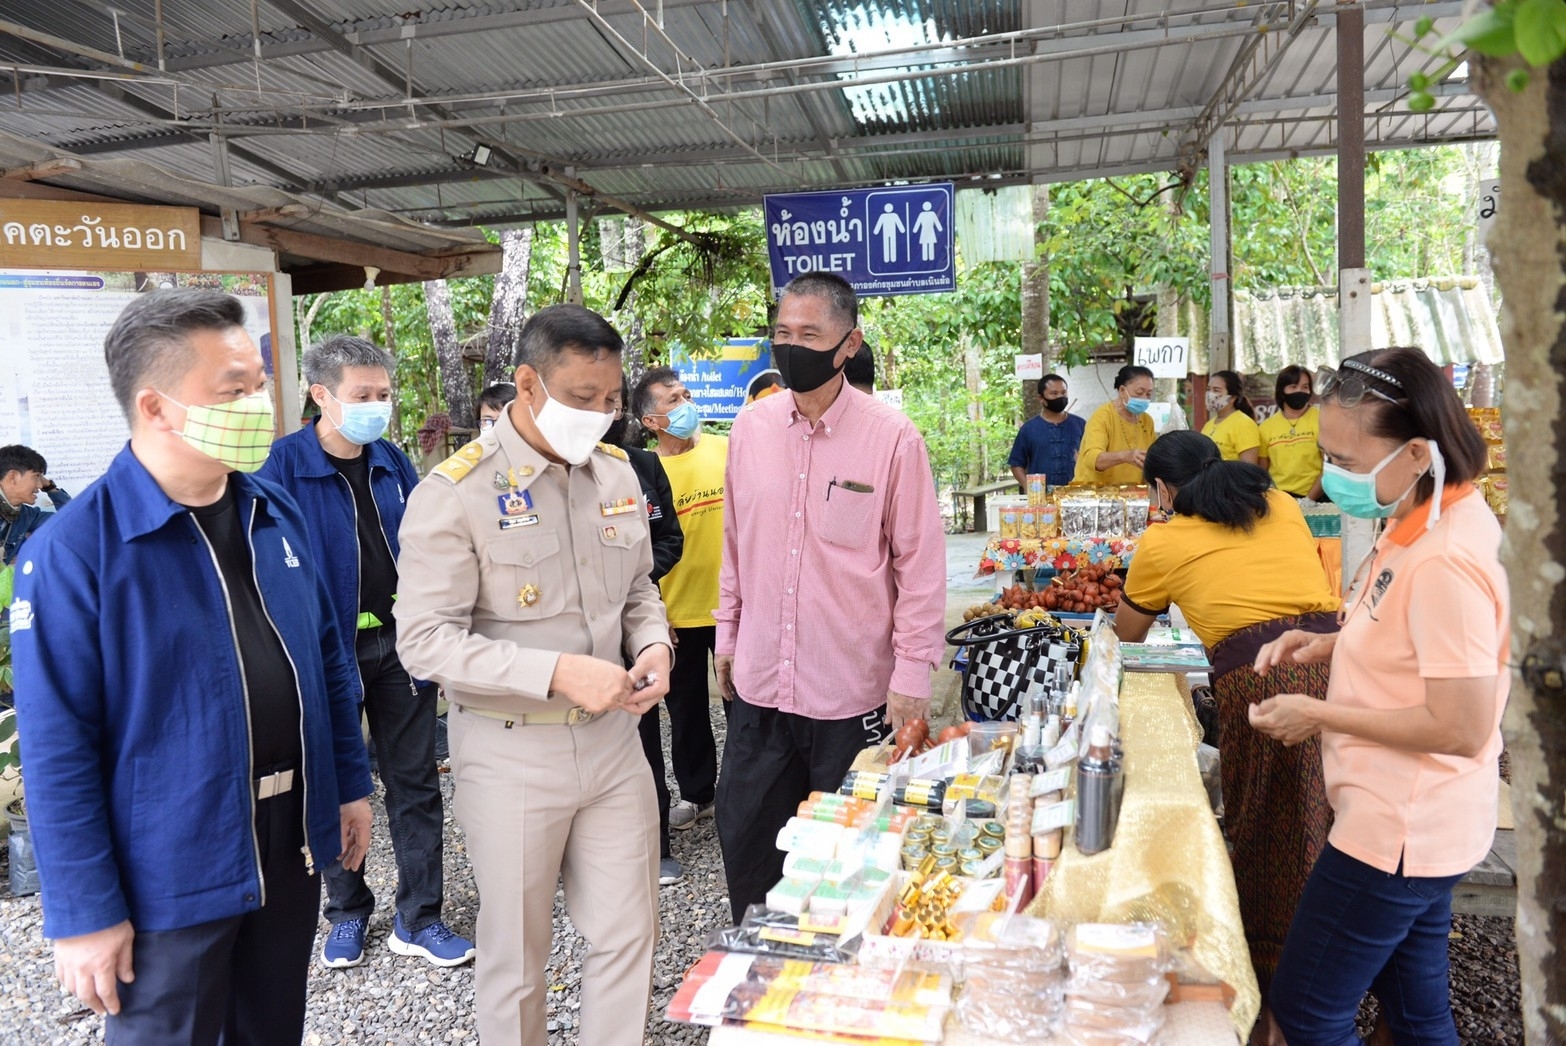 ทีเส็บเปิดตัวแคมเปญส่งเสริมไมซ์ในประเทศ ประชุมเมืองไทย ปลอดภัยกว่า